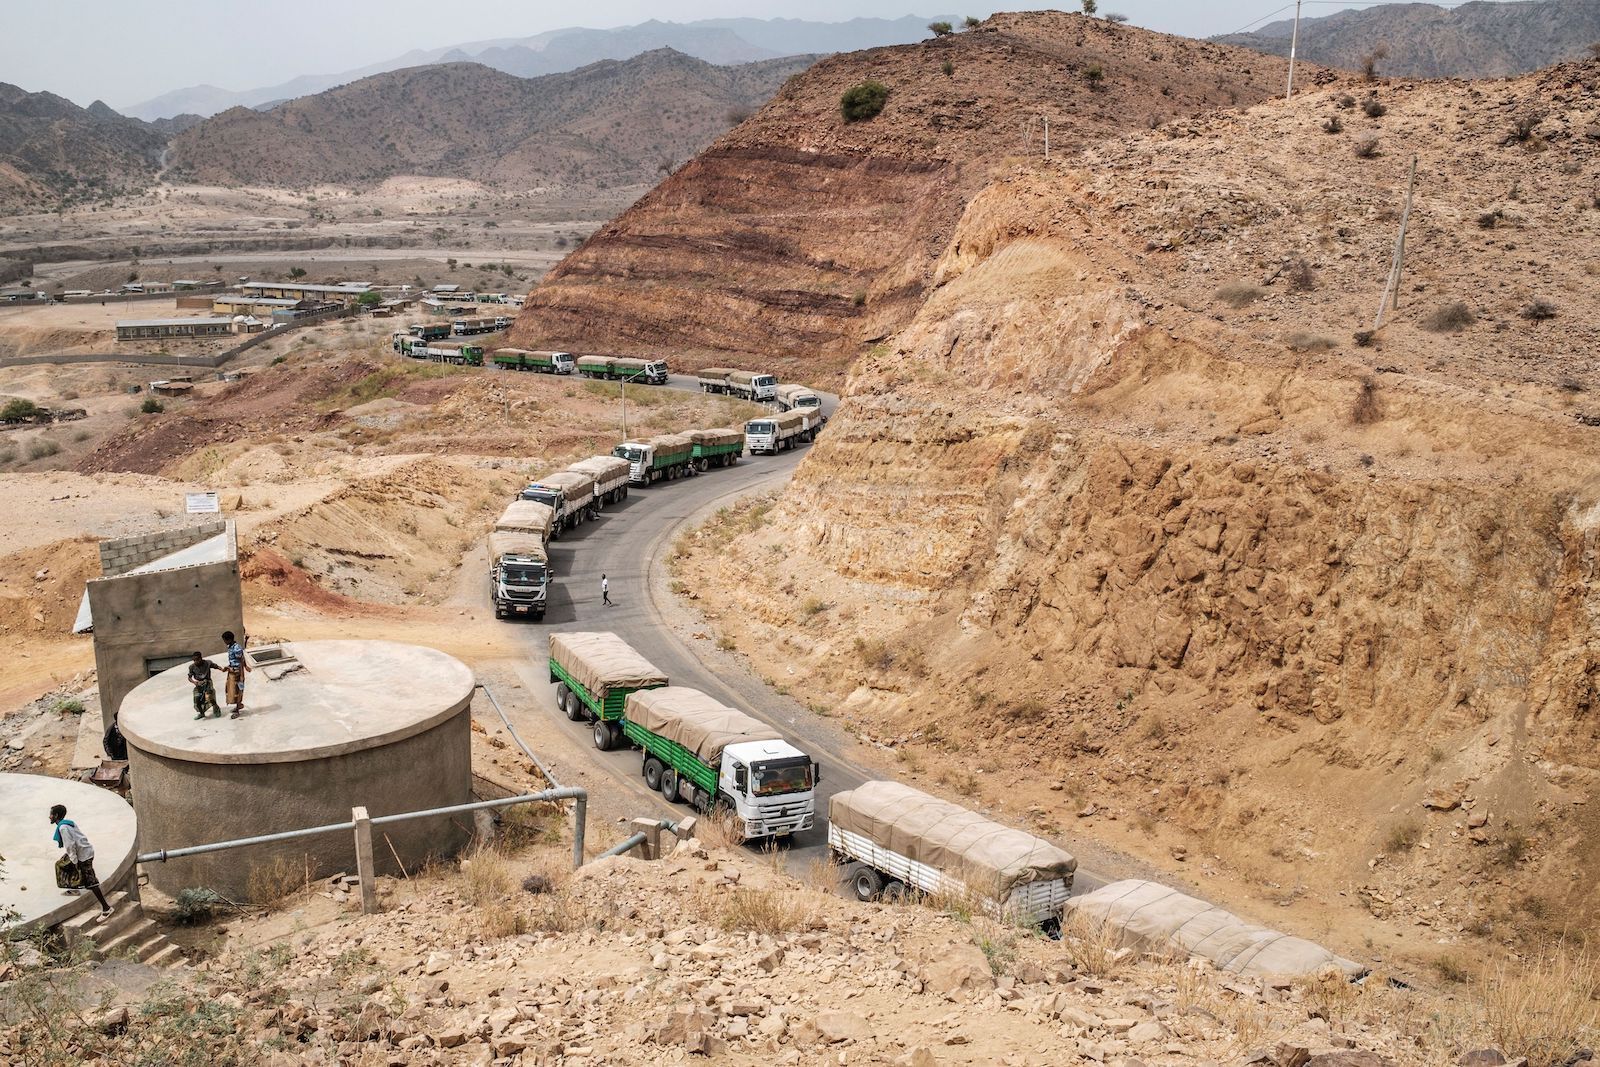 A caravan of trucks wind through a desert landscape